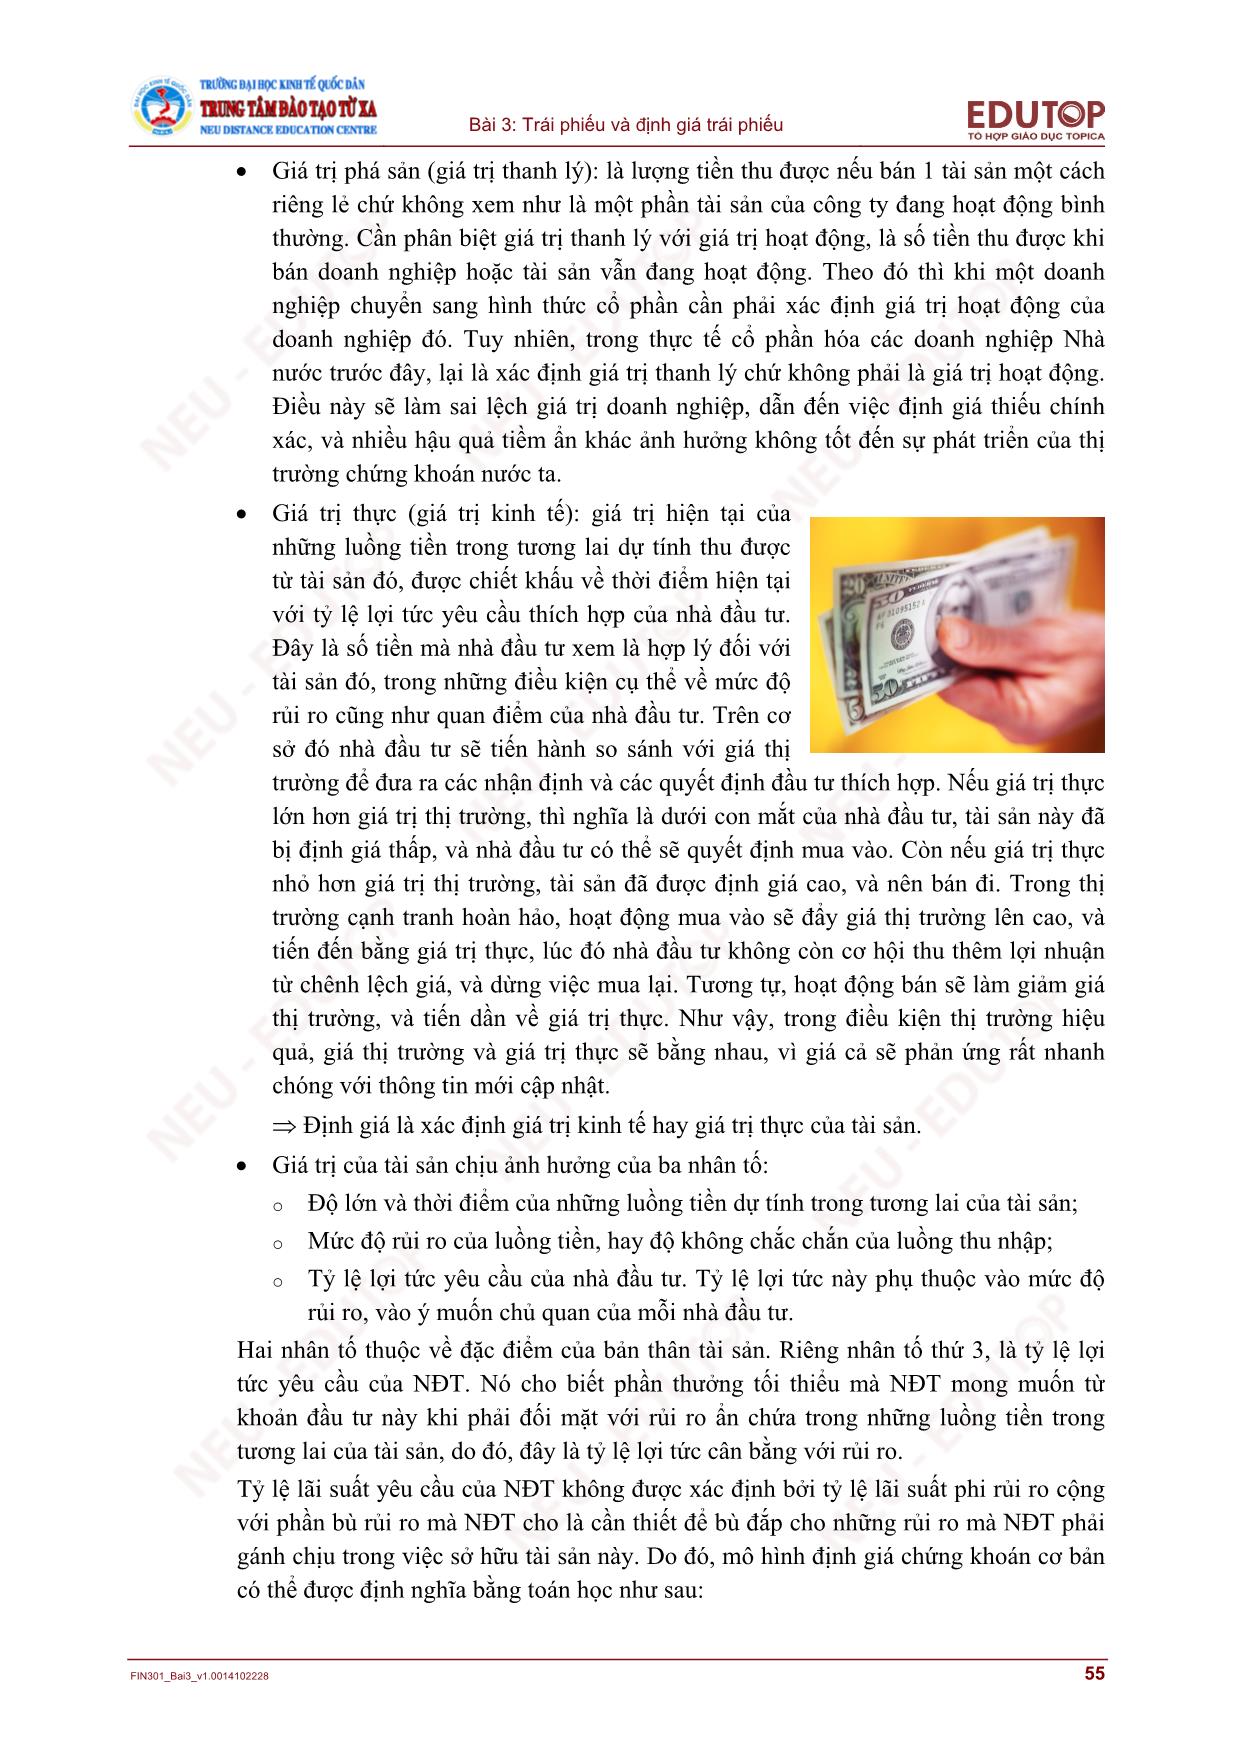 Bài giảng môn Thị trường chứng khoán - Bài 3: Trái phiếu và định giá trái phiếu trang 7